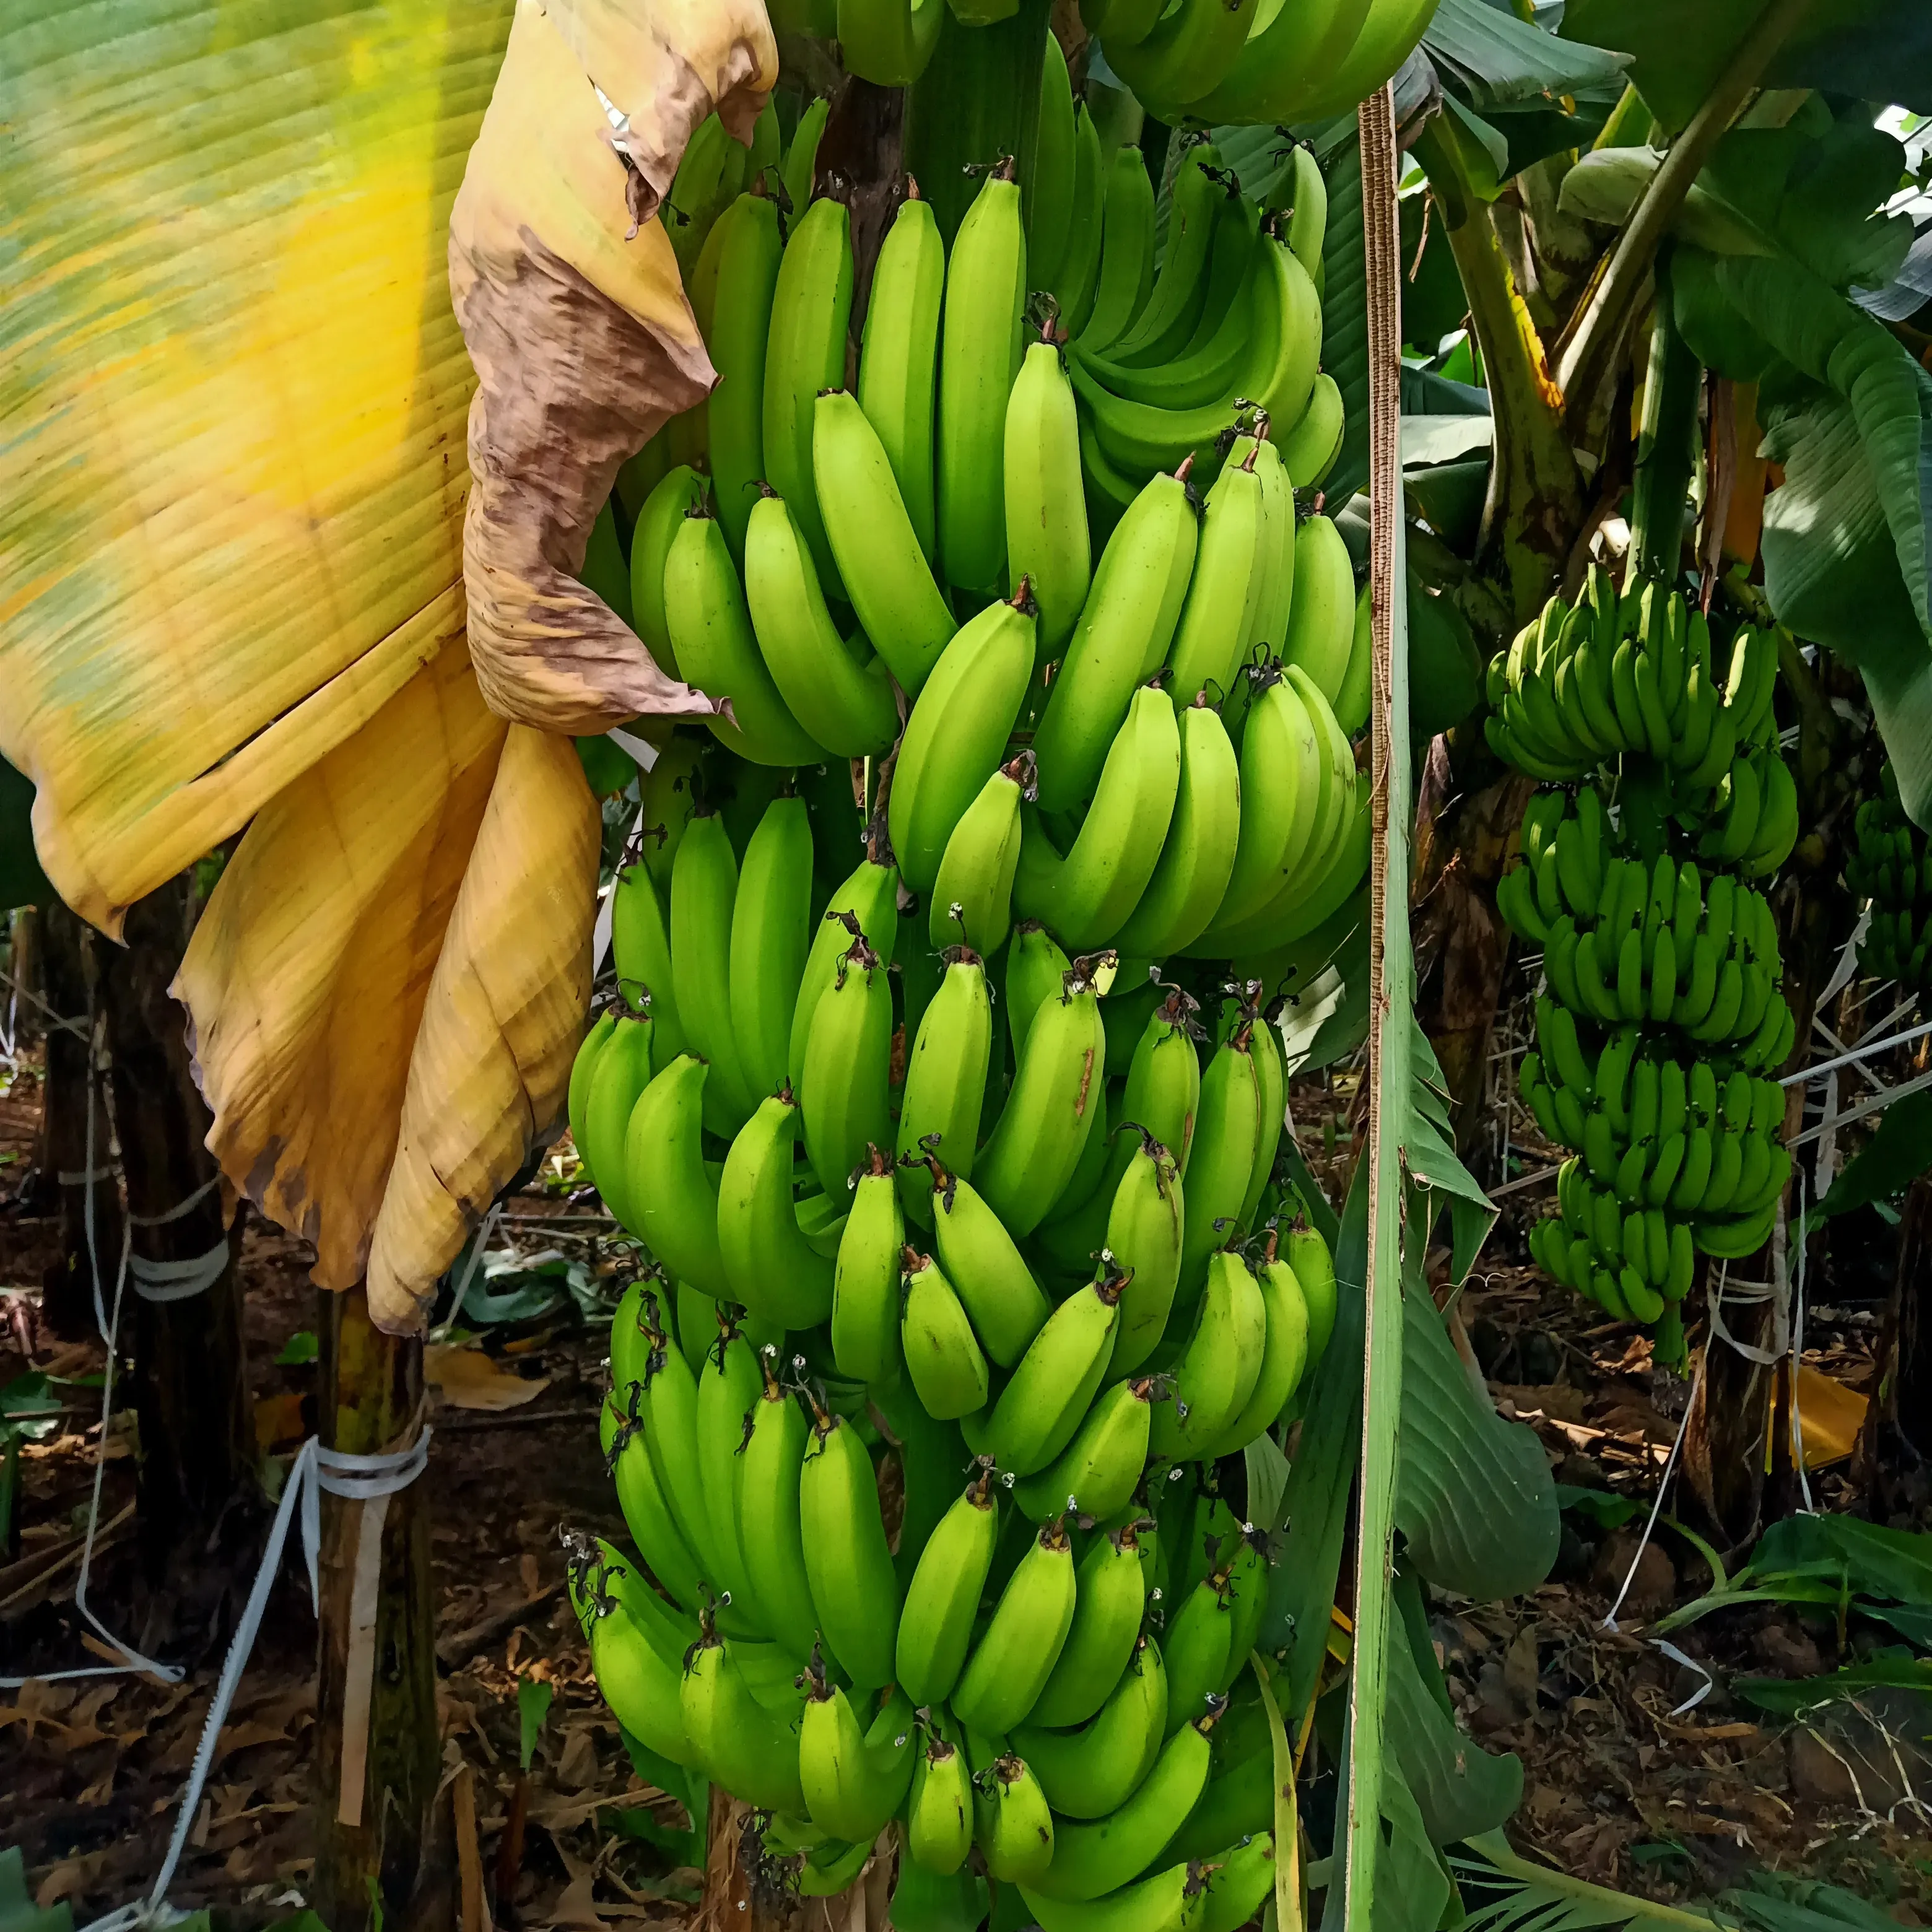 Plátanos frescos de pieza entera Plátanos frescos enteros largos Plátano vietnamita Cavendish nueva cosecha